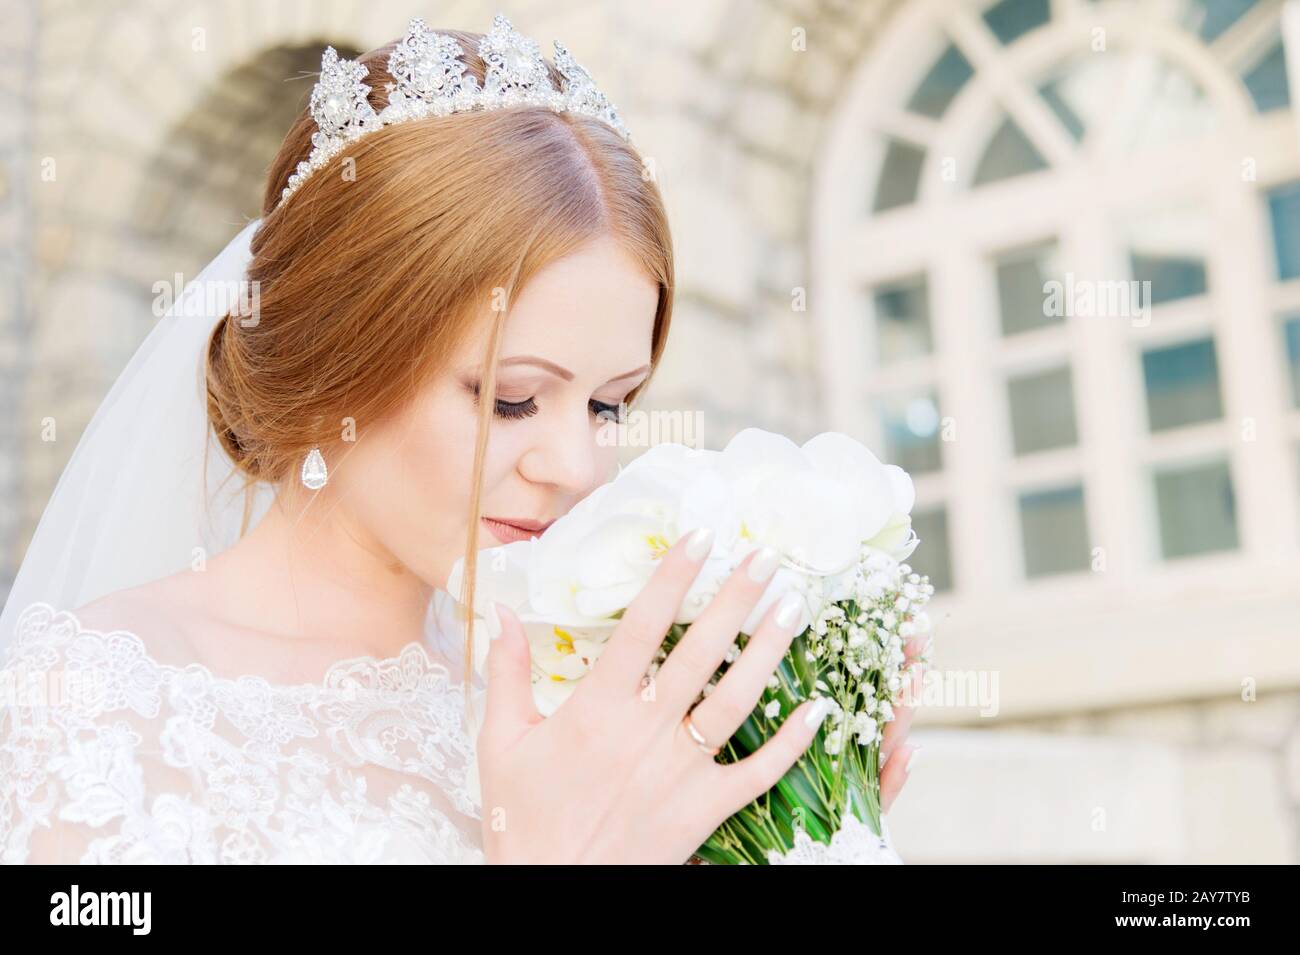 Une jeune mariée dans une robe blanche ronfle son bouquet de mariage qui est soigneusement tenu par ses mains Banque D'Images